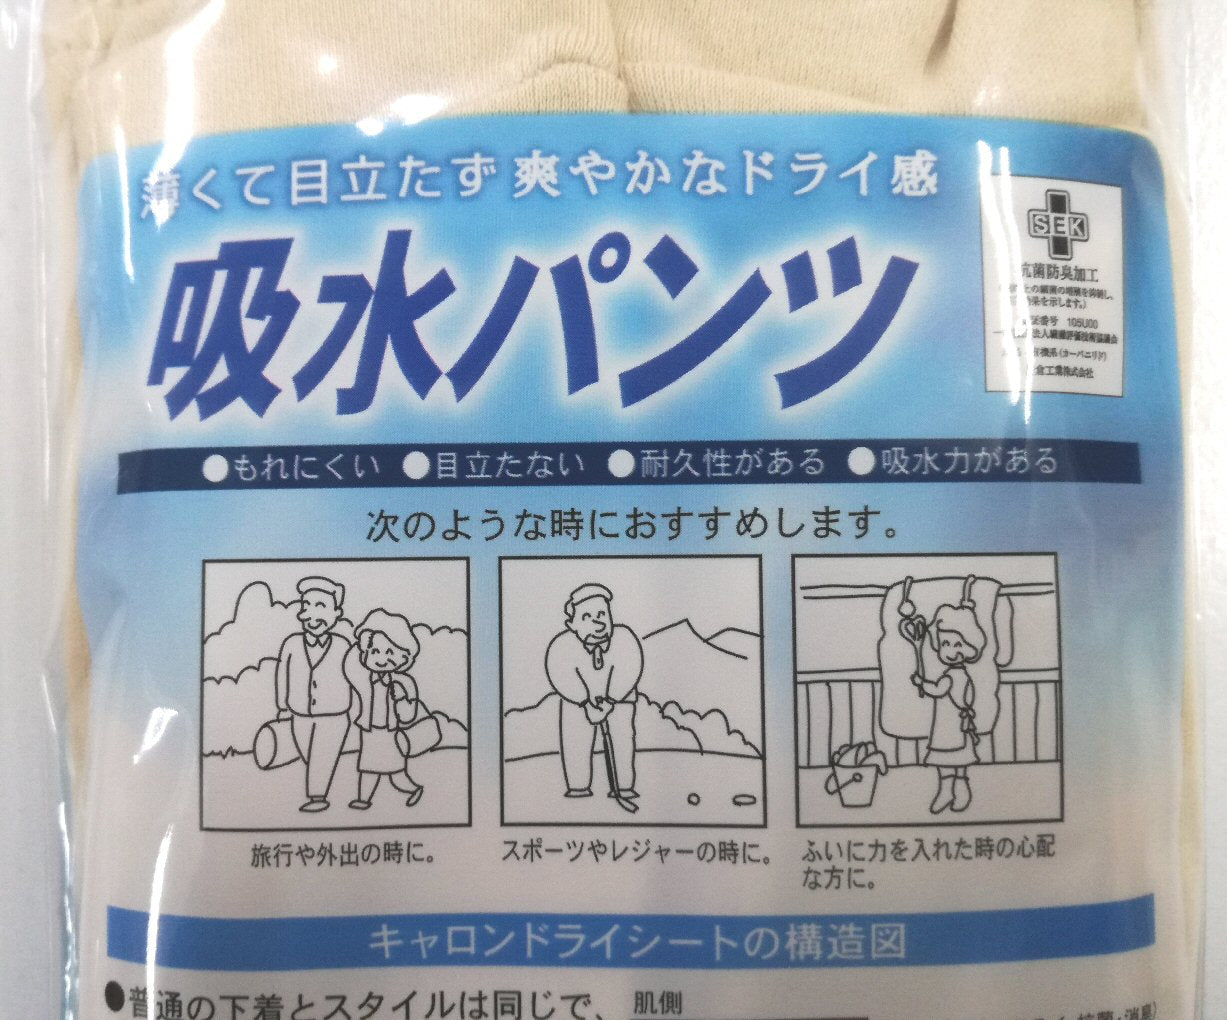 日本製 軽失禁吸収パンツ ブリーフタイプ 男性用 グレー 薄くて目立たない  尿漏れ対策に◎